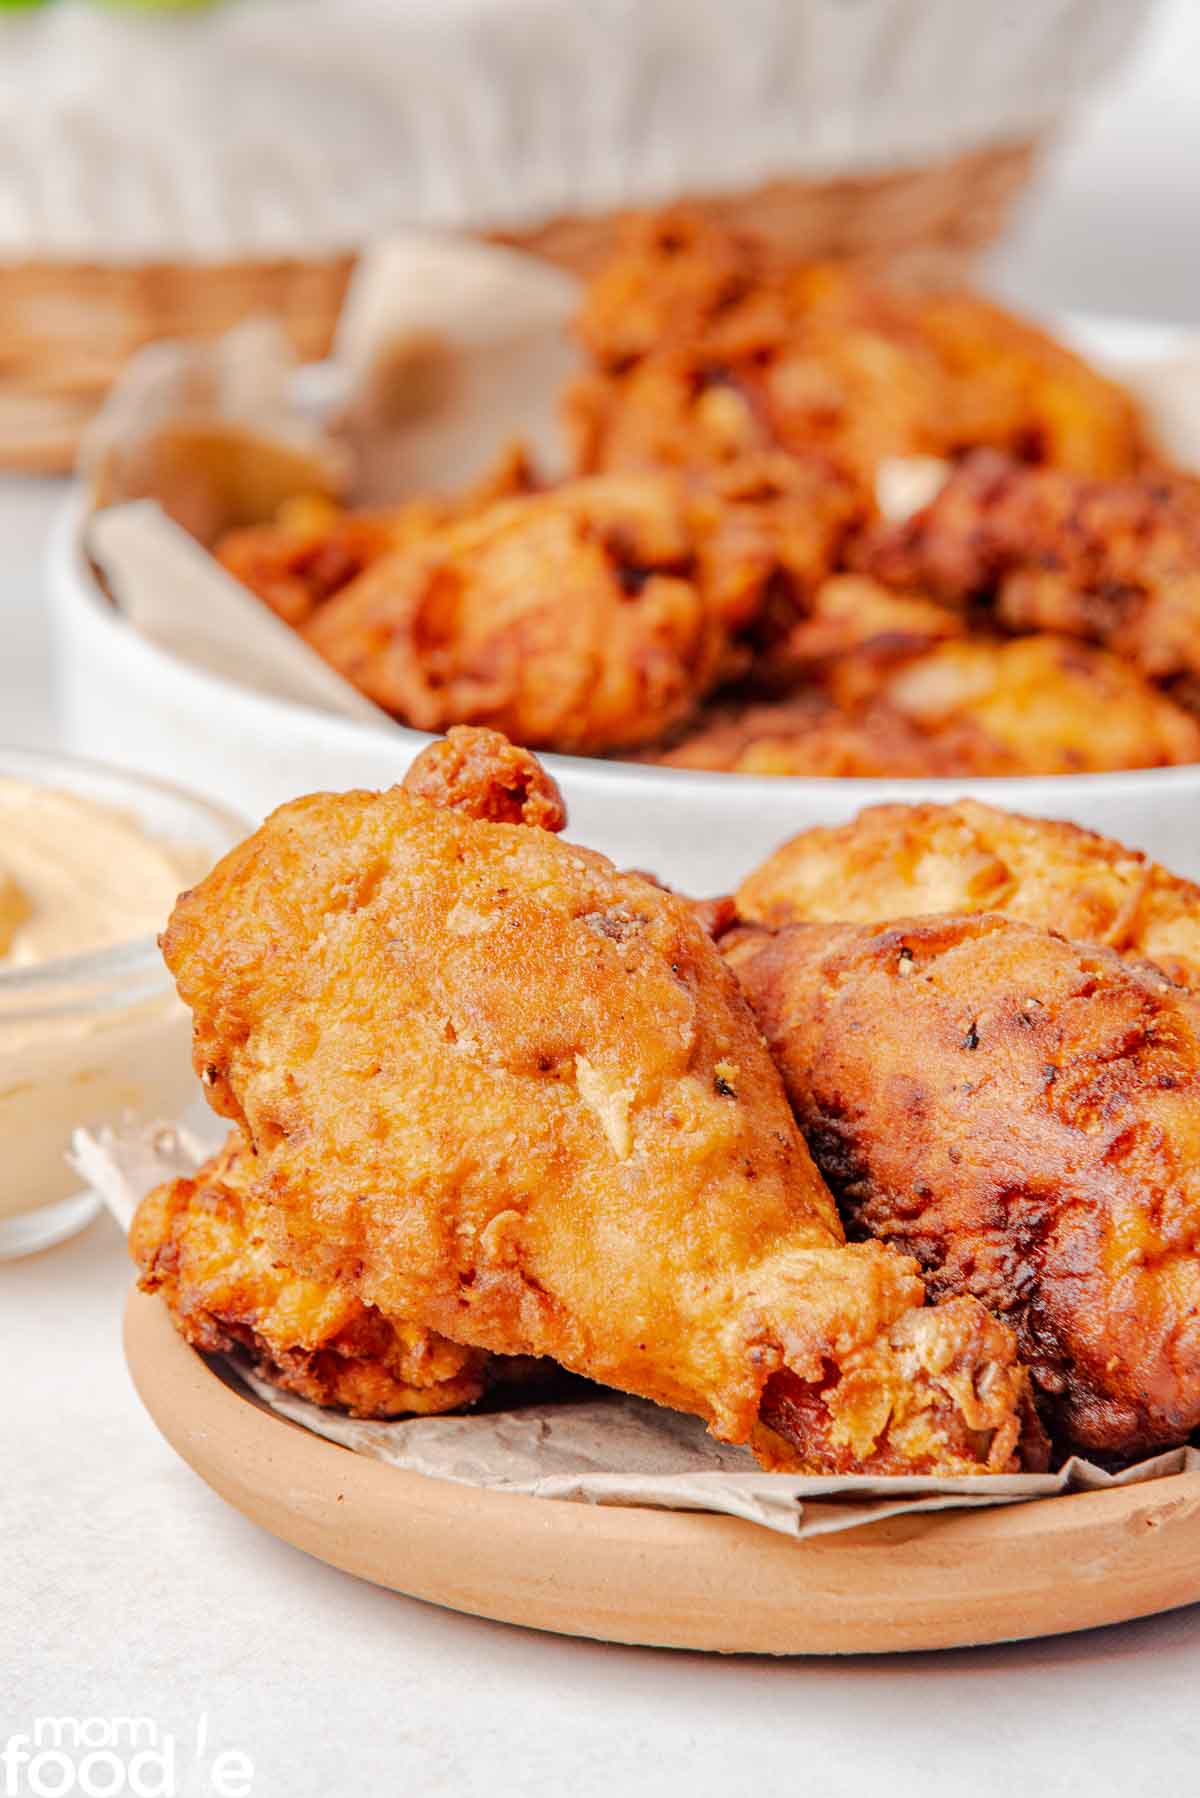 golden brown fried chicken pieces being served.